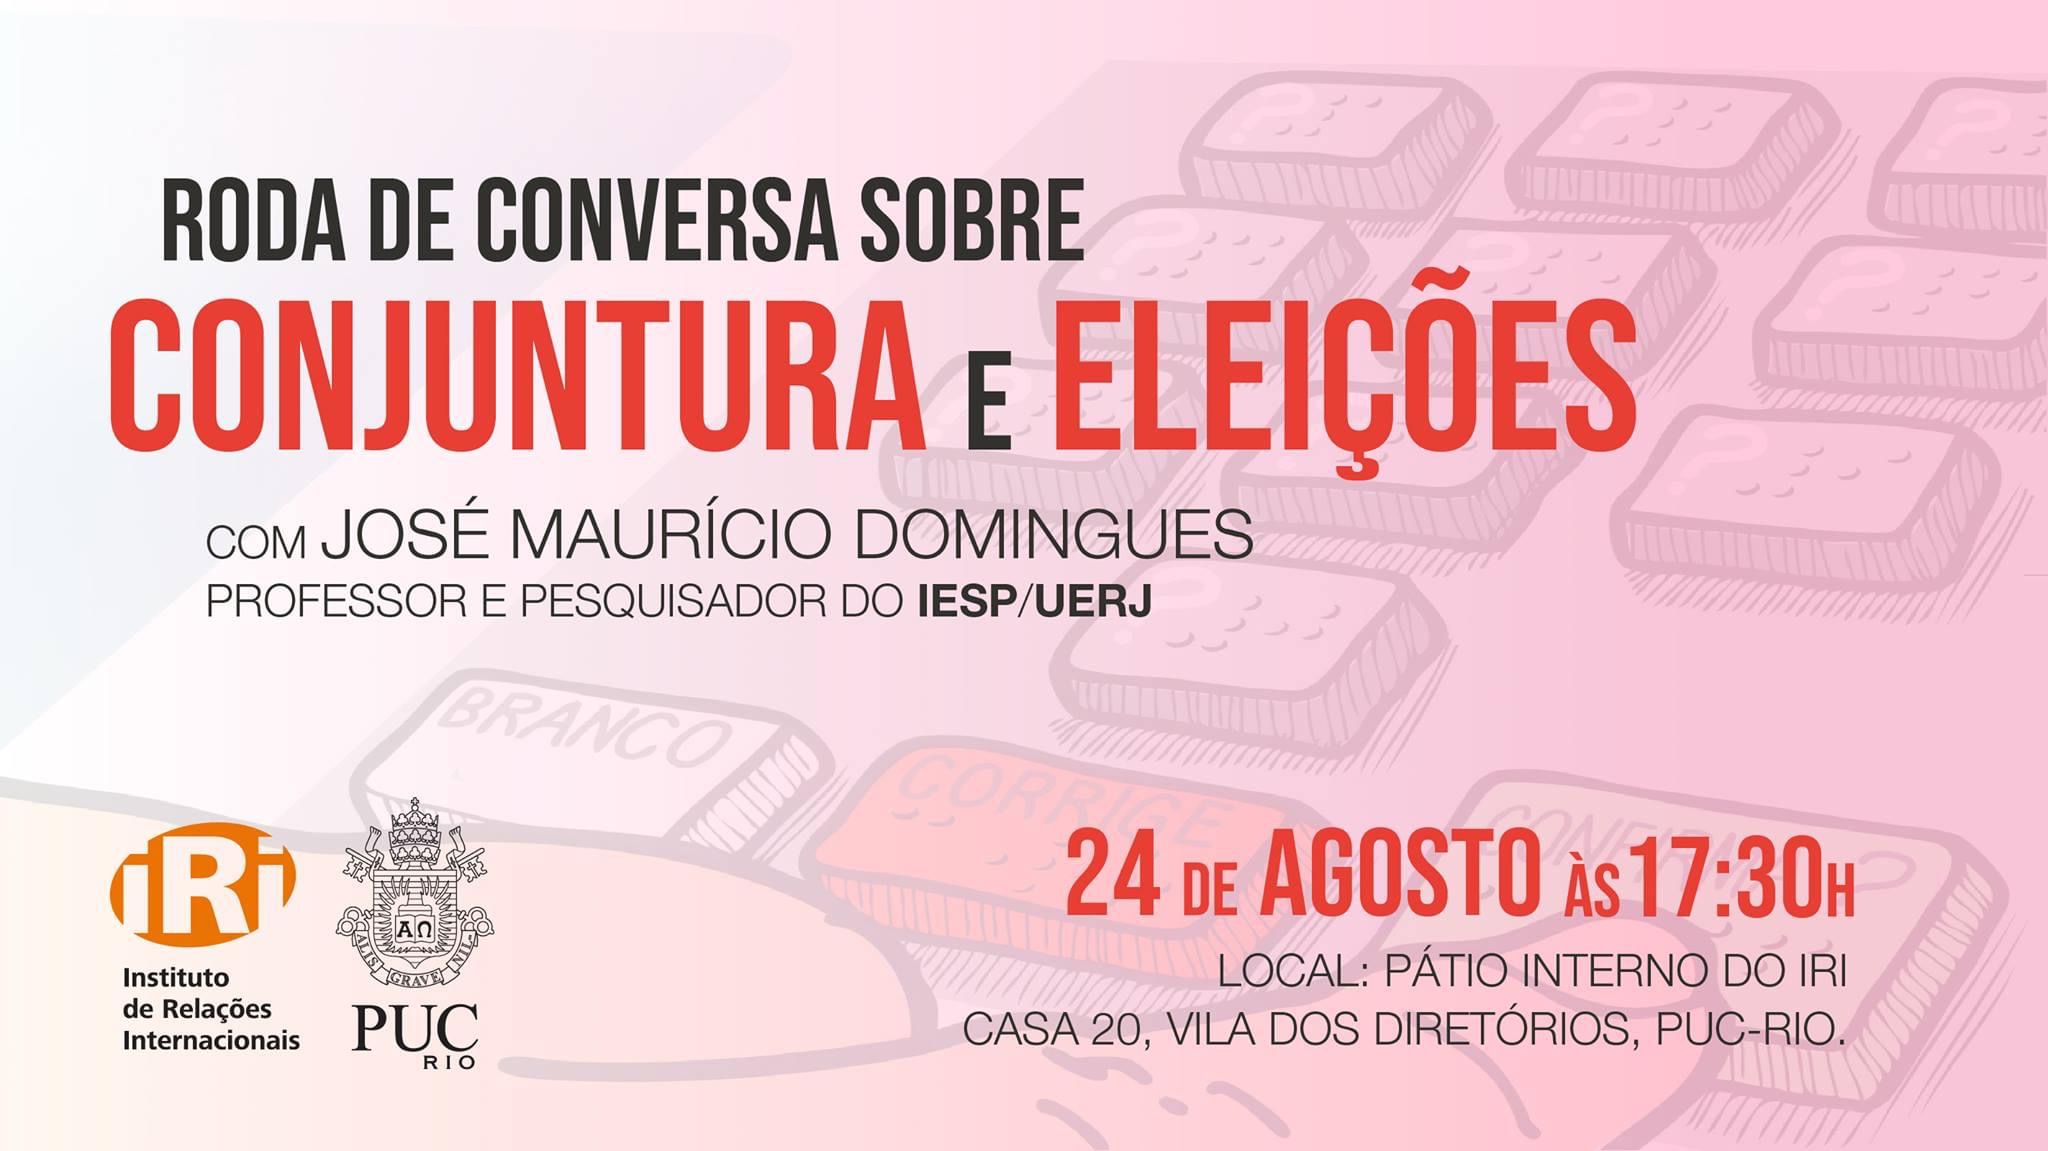 Roda de conversa sobre Conjuntura e Eleições com José Maurício Domingues